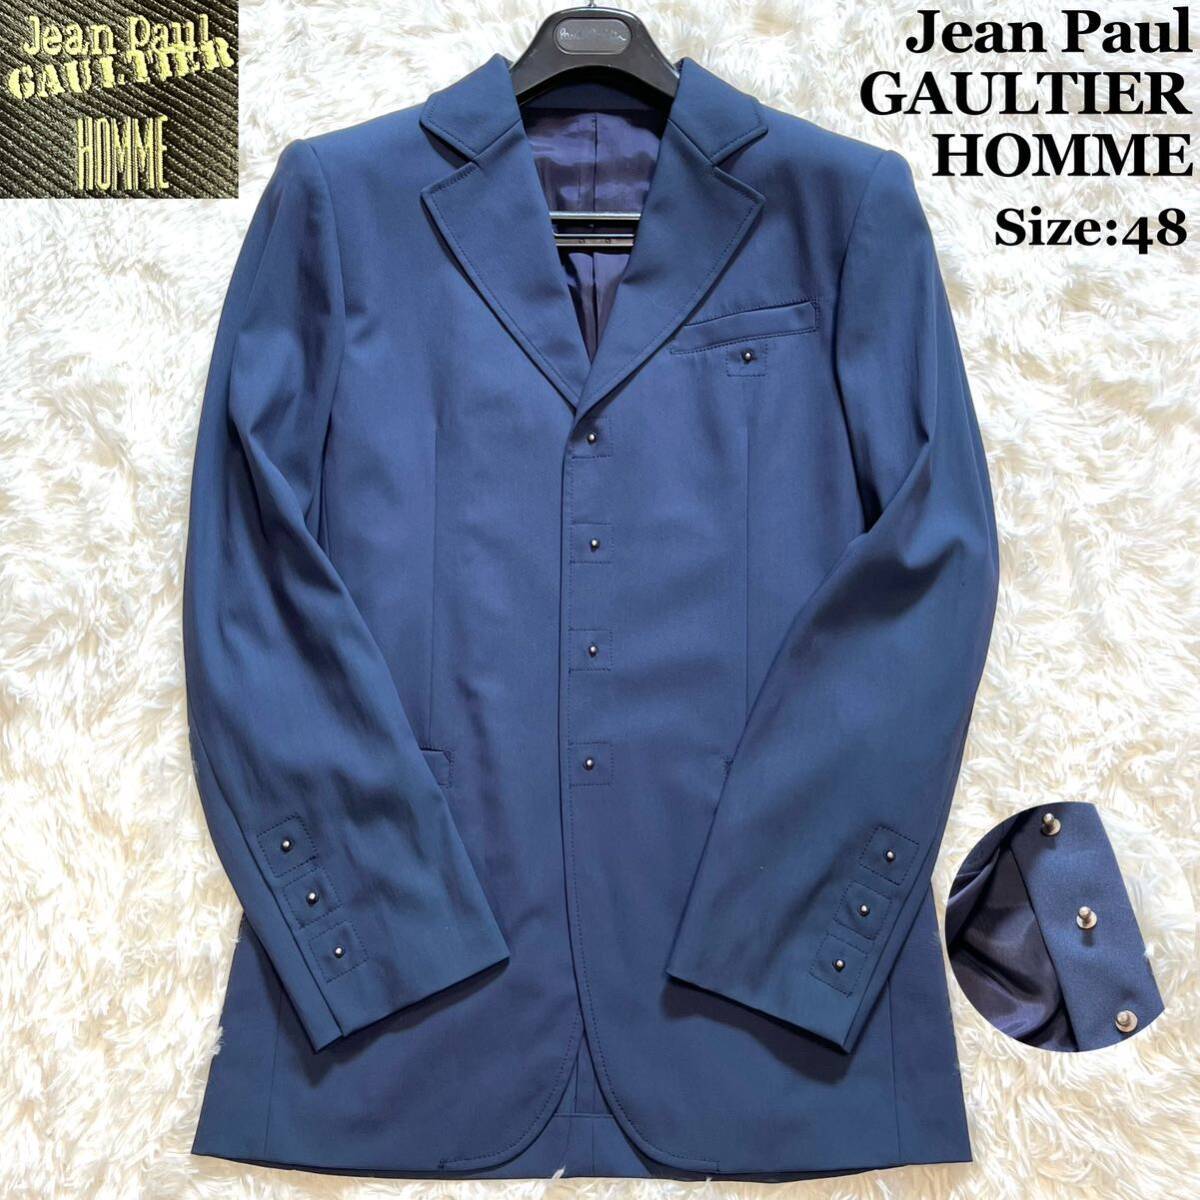  супер редкий Jean Paul Gaultier HOMME Jean-Paul Gaultier tailored jacket 48 темно-синий голубой архив шар насекомое L-XL одиночный мужской 